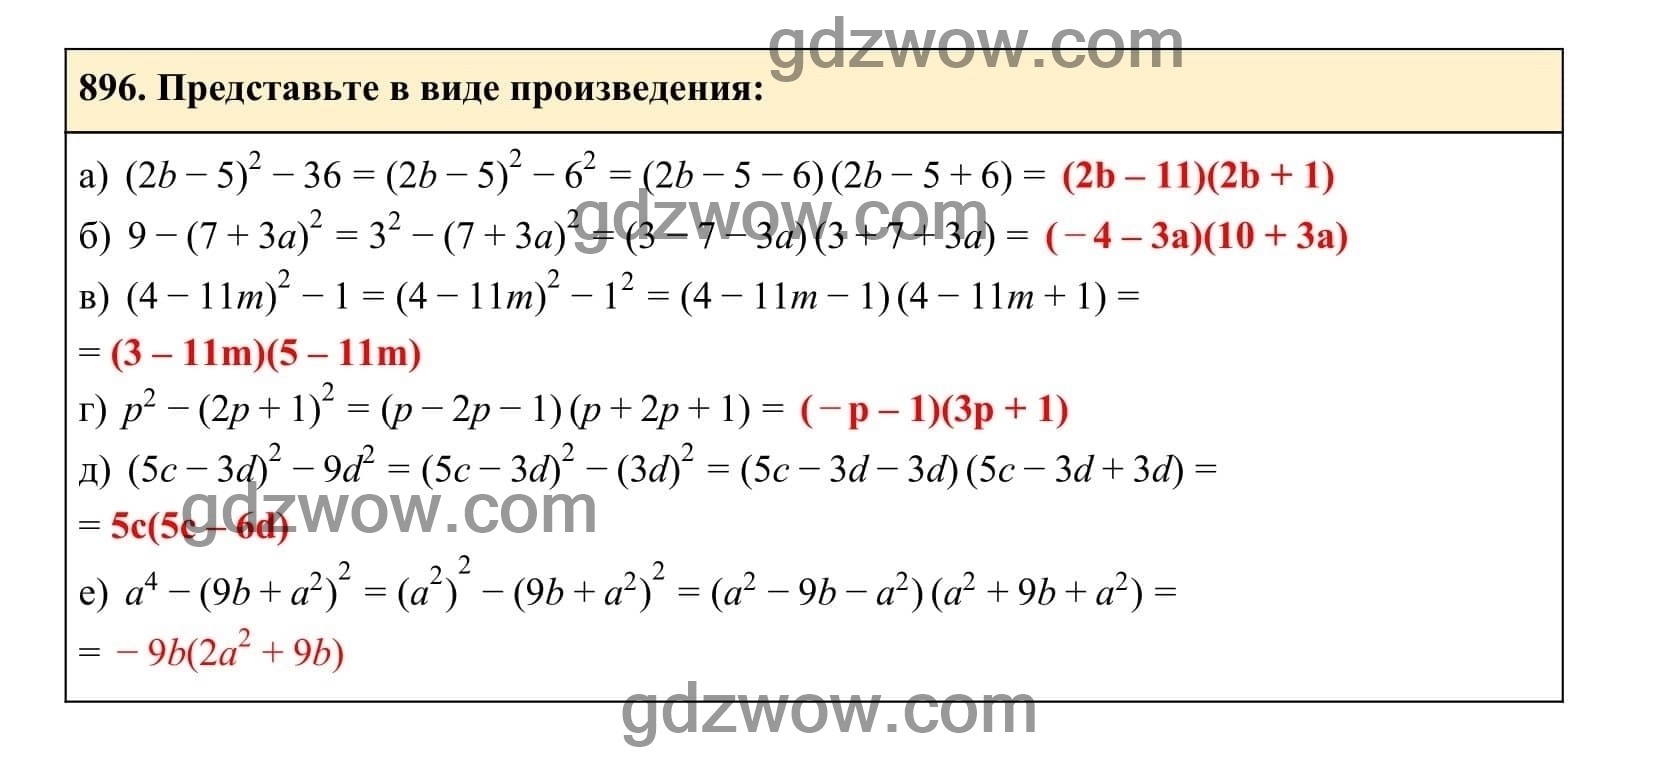 Упражнение 896 - ГДЗ по Алгебре 7 класс Учебник Макарычев (решебник) - GDZwow